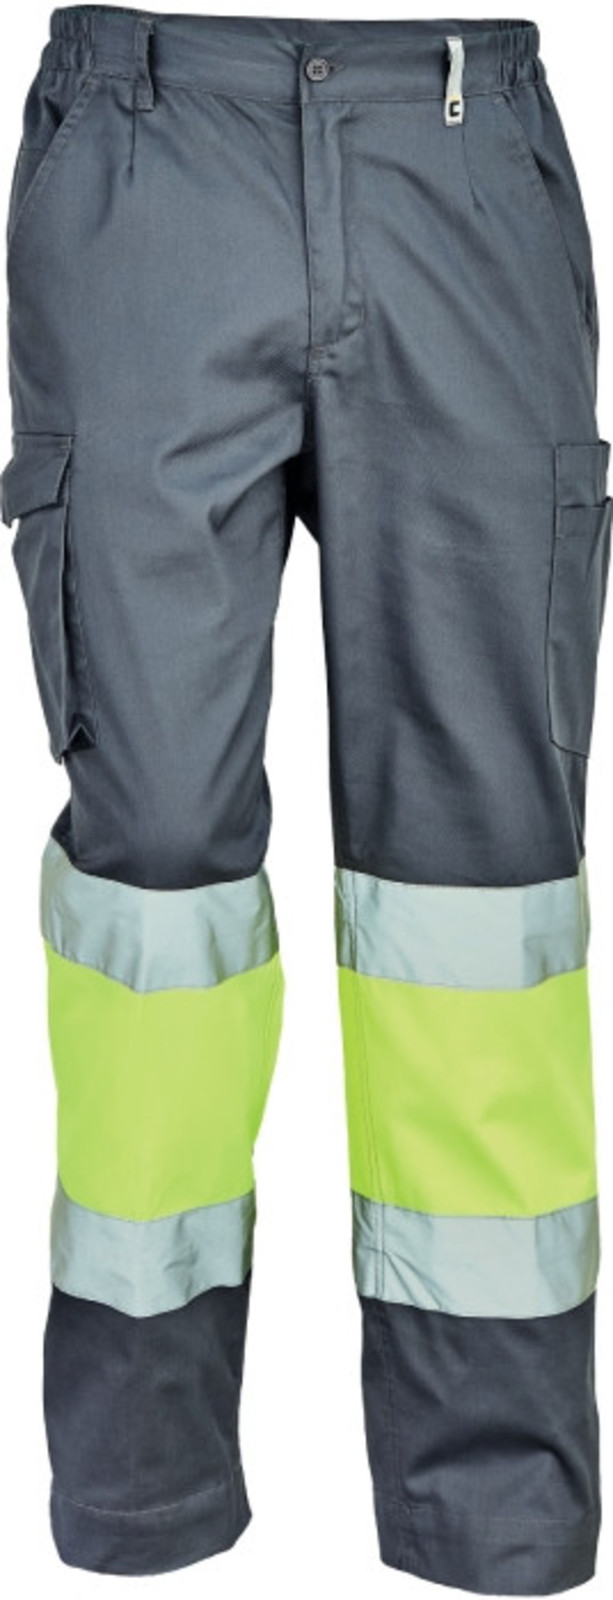 Pracovné reflexné nohavice Cerva Ciudades Bilbao HV - veľkosť: 58, farba: sivá/žltá